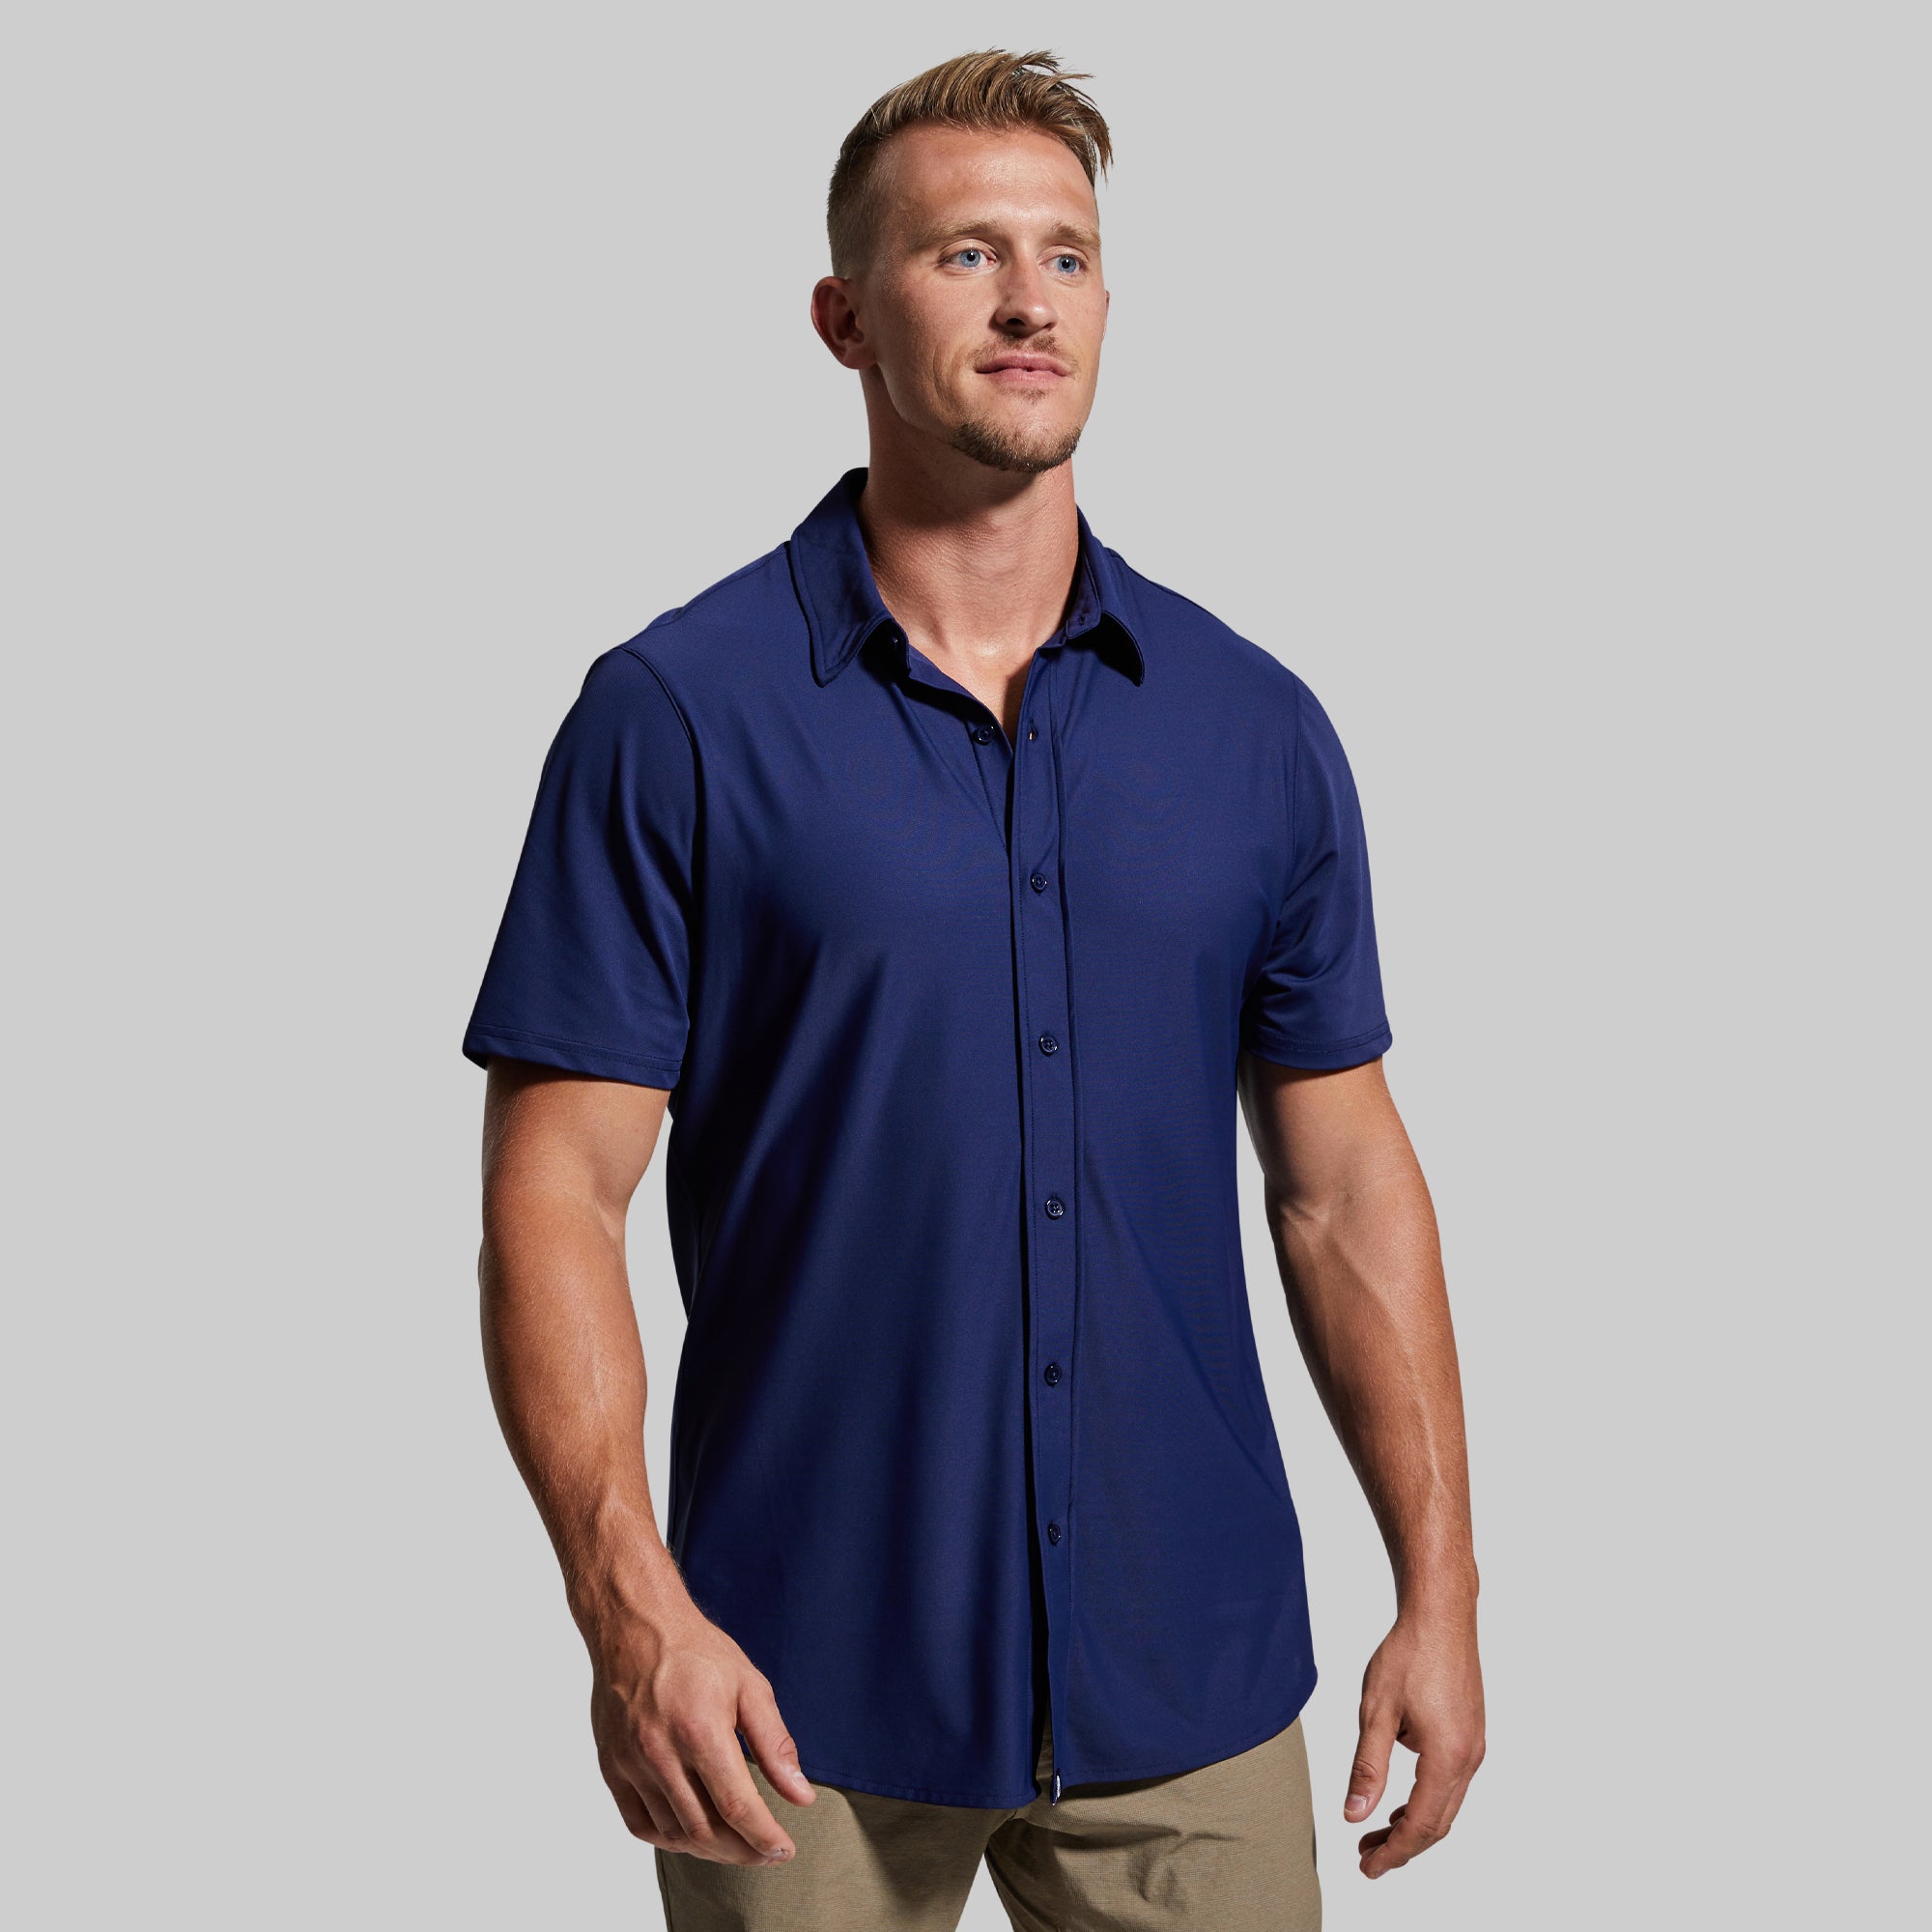 Commuter Shirt | Men's Short Sleeve Button Up | Men's Stretchy Short ...